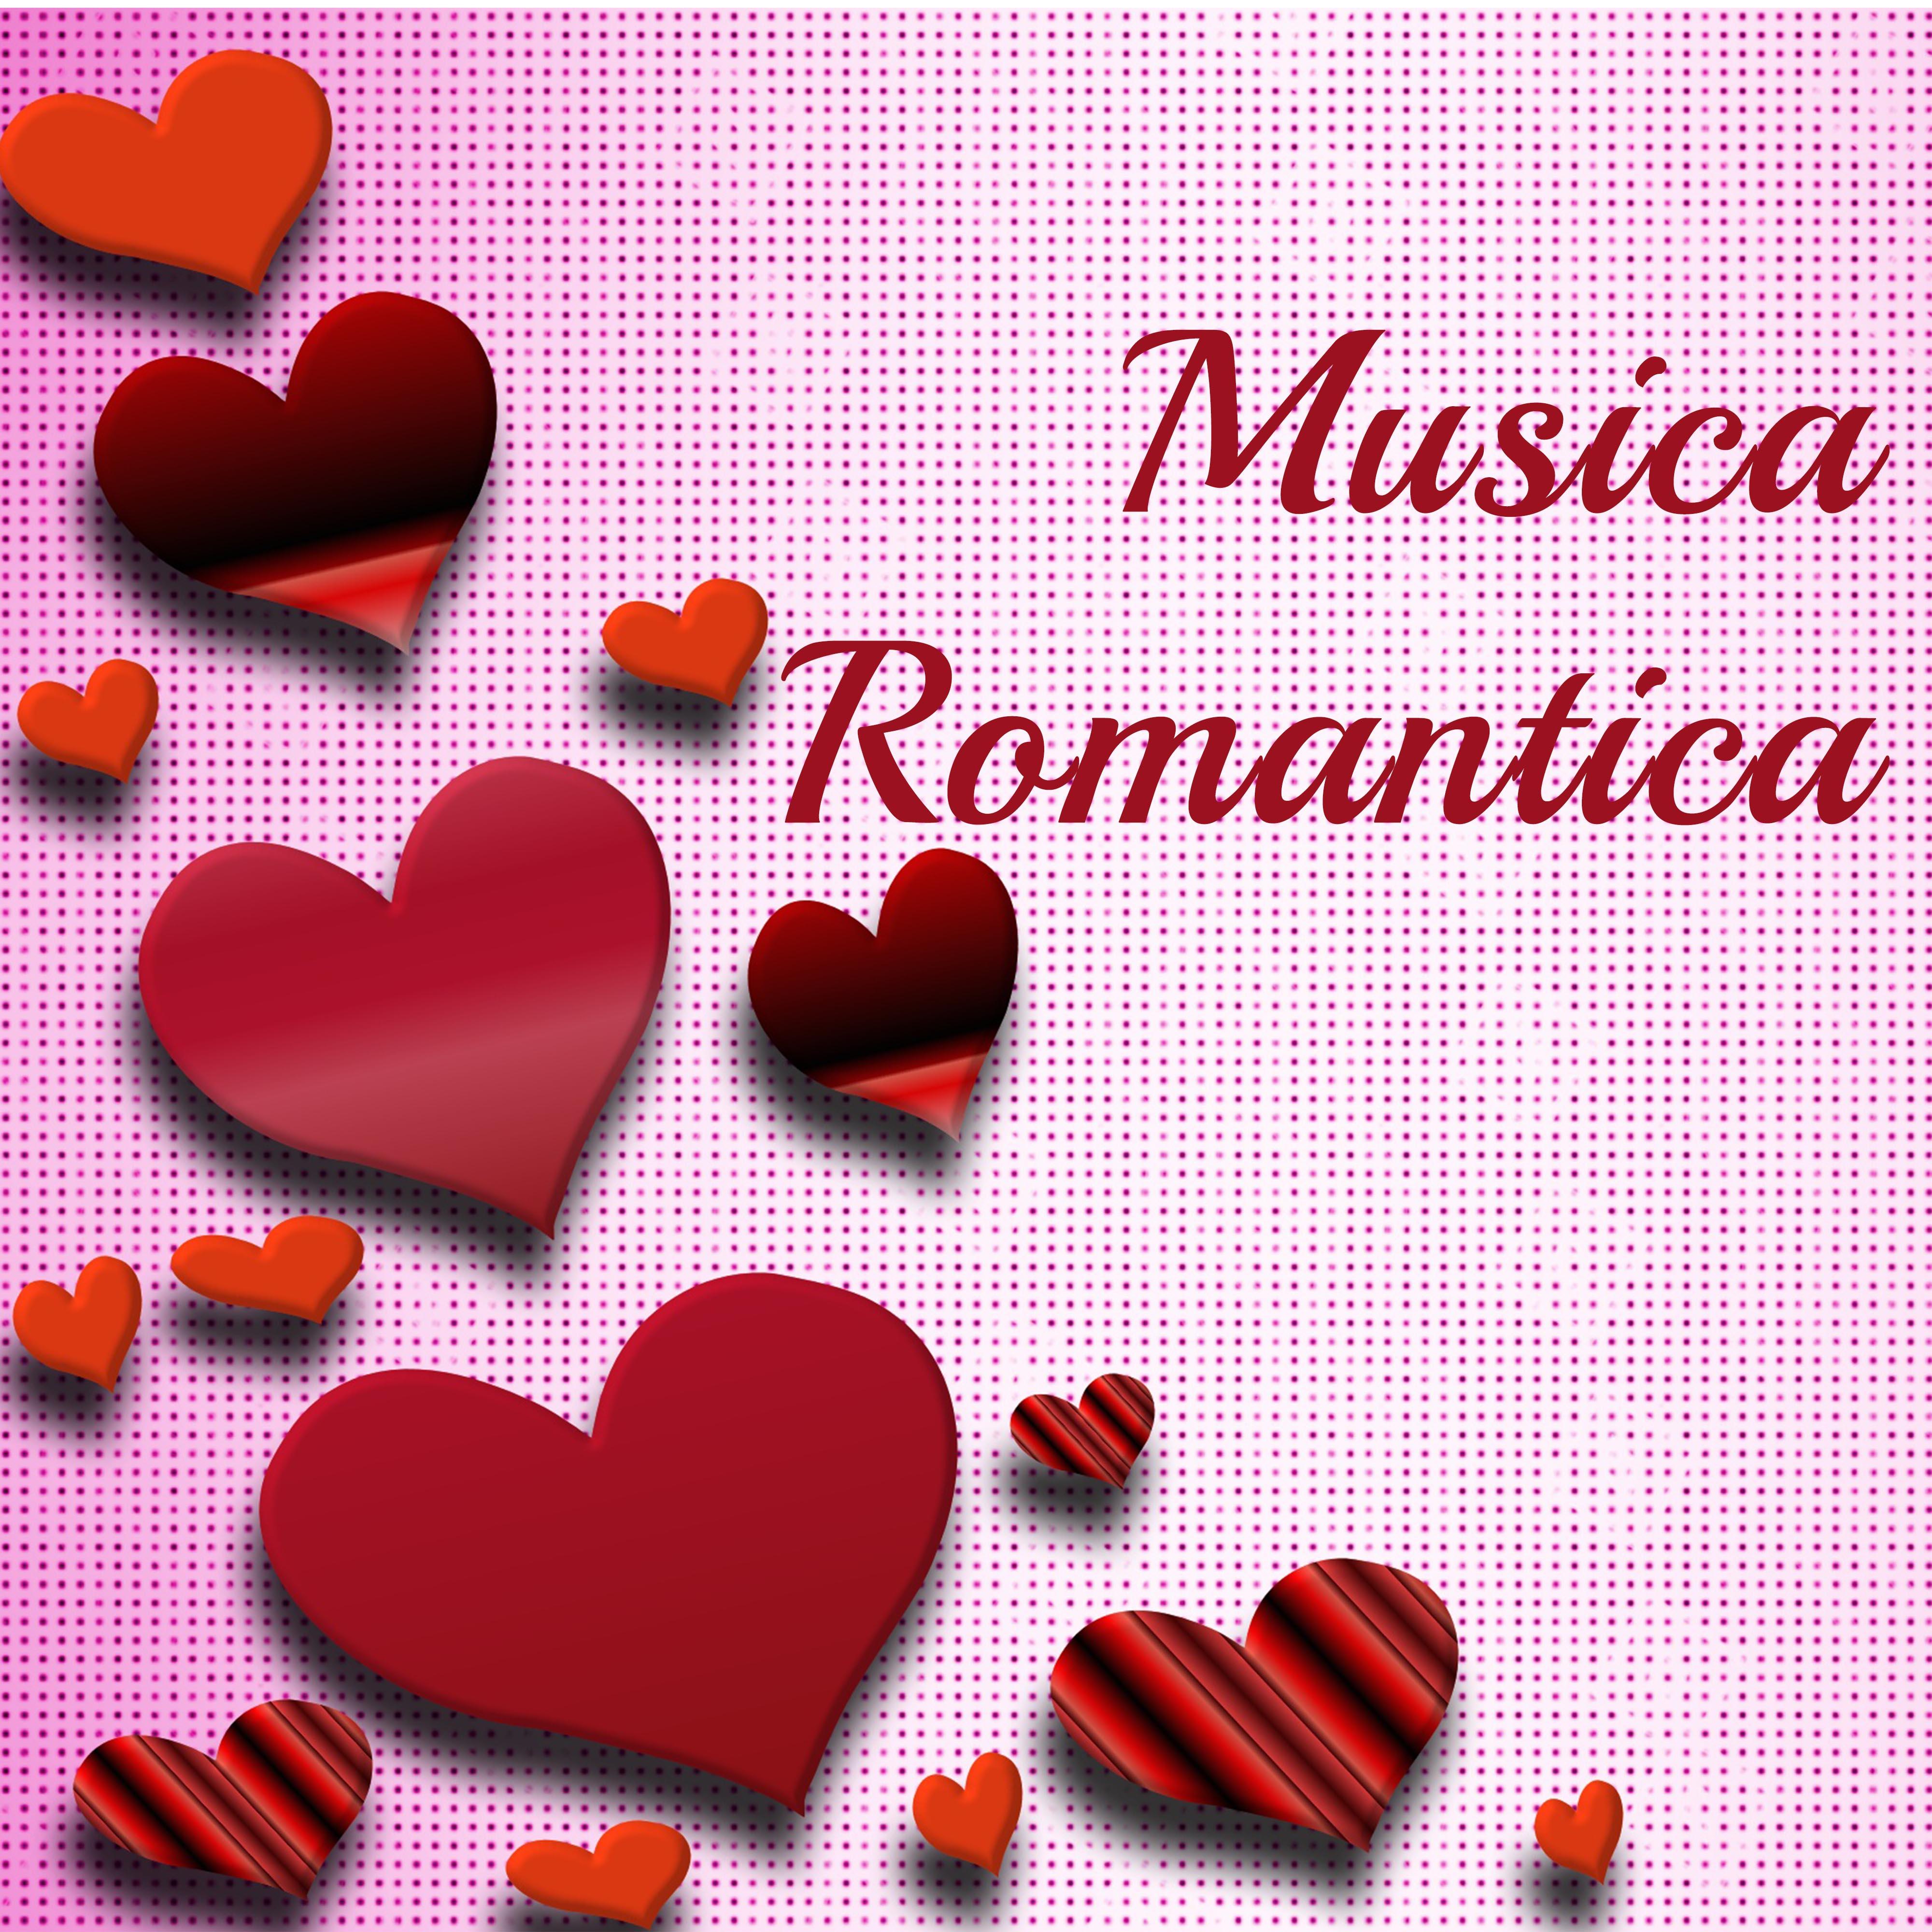 Storia d'Amore (Musica Matrimonio)